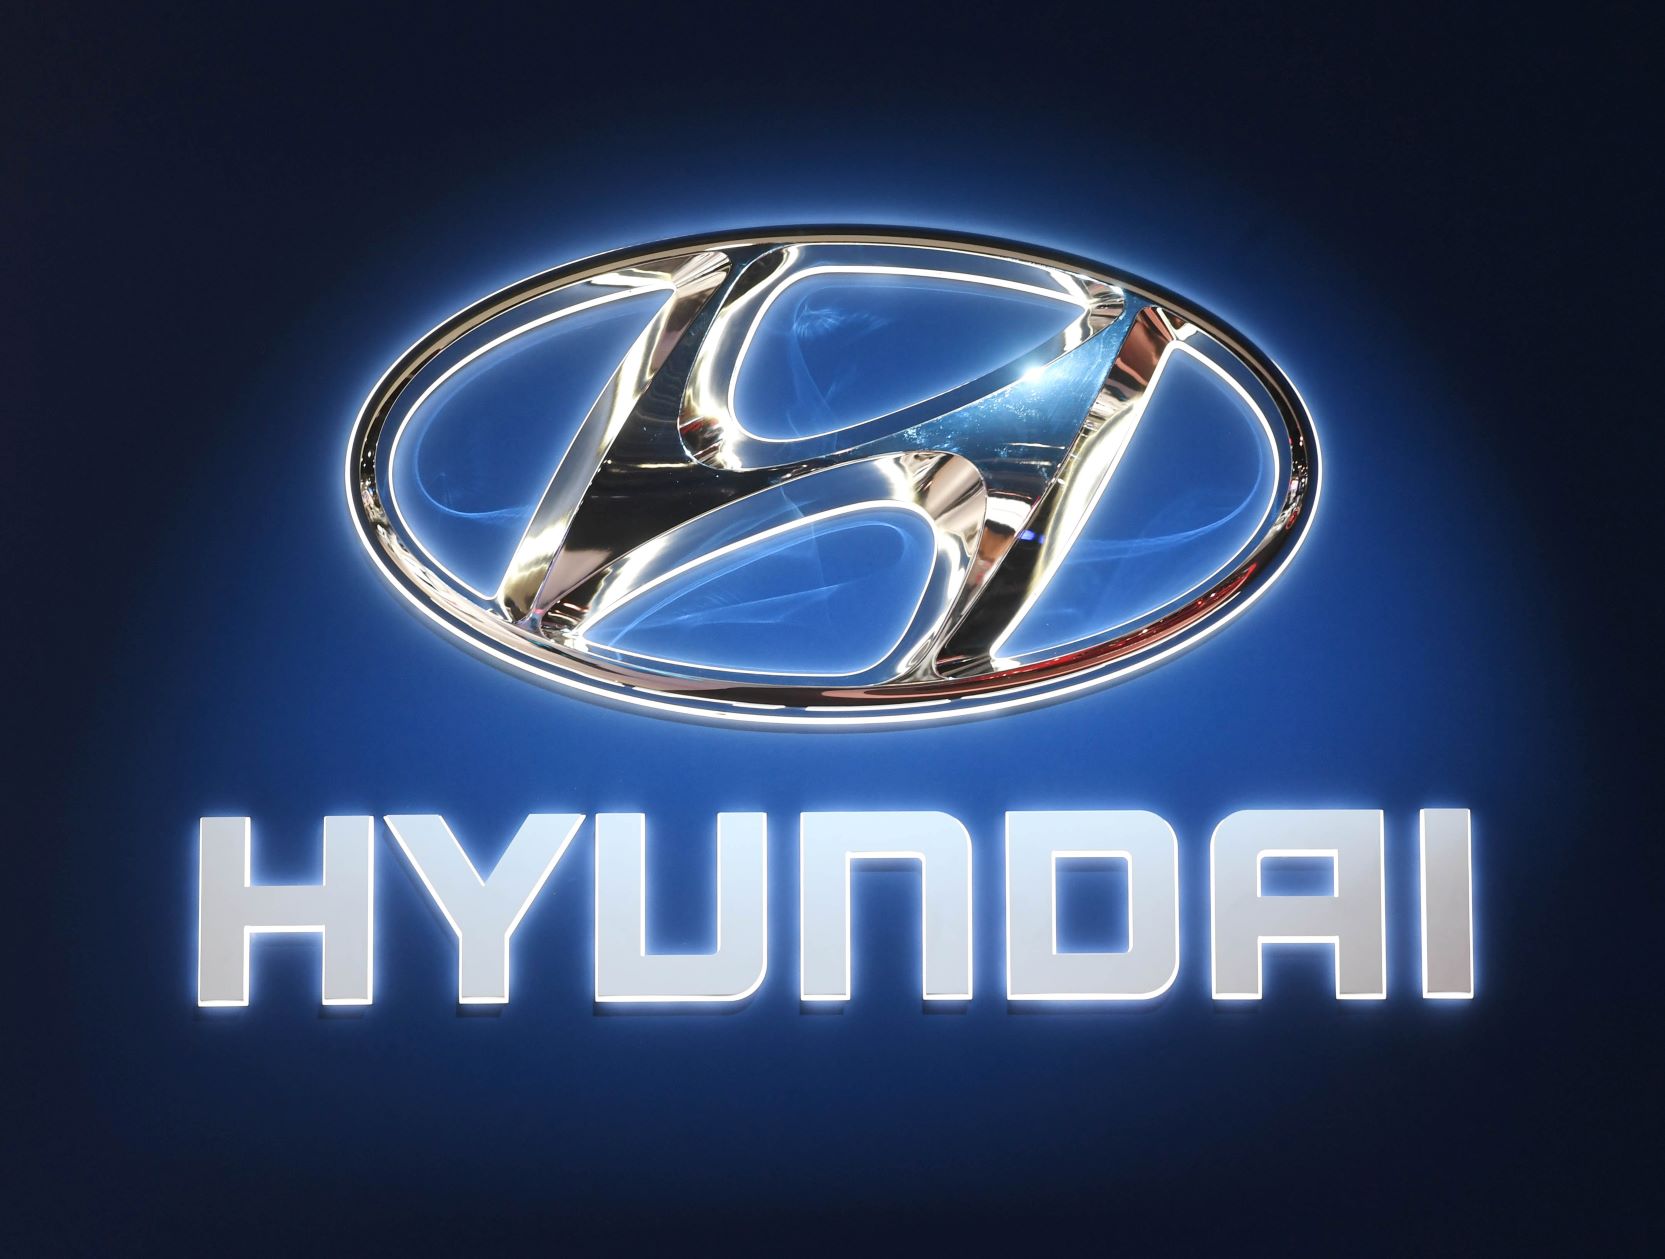 Les SUV pourraient demain perdre du terrain avec la déferlante des voitures électriques, selon Hyundai France